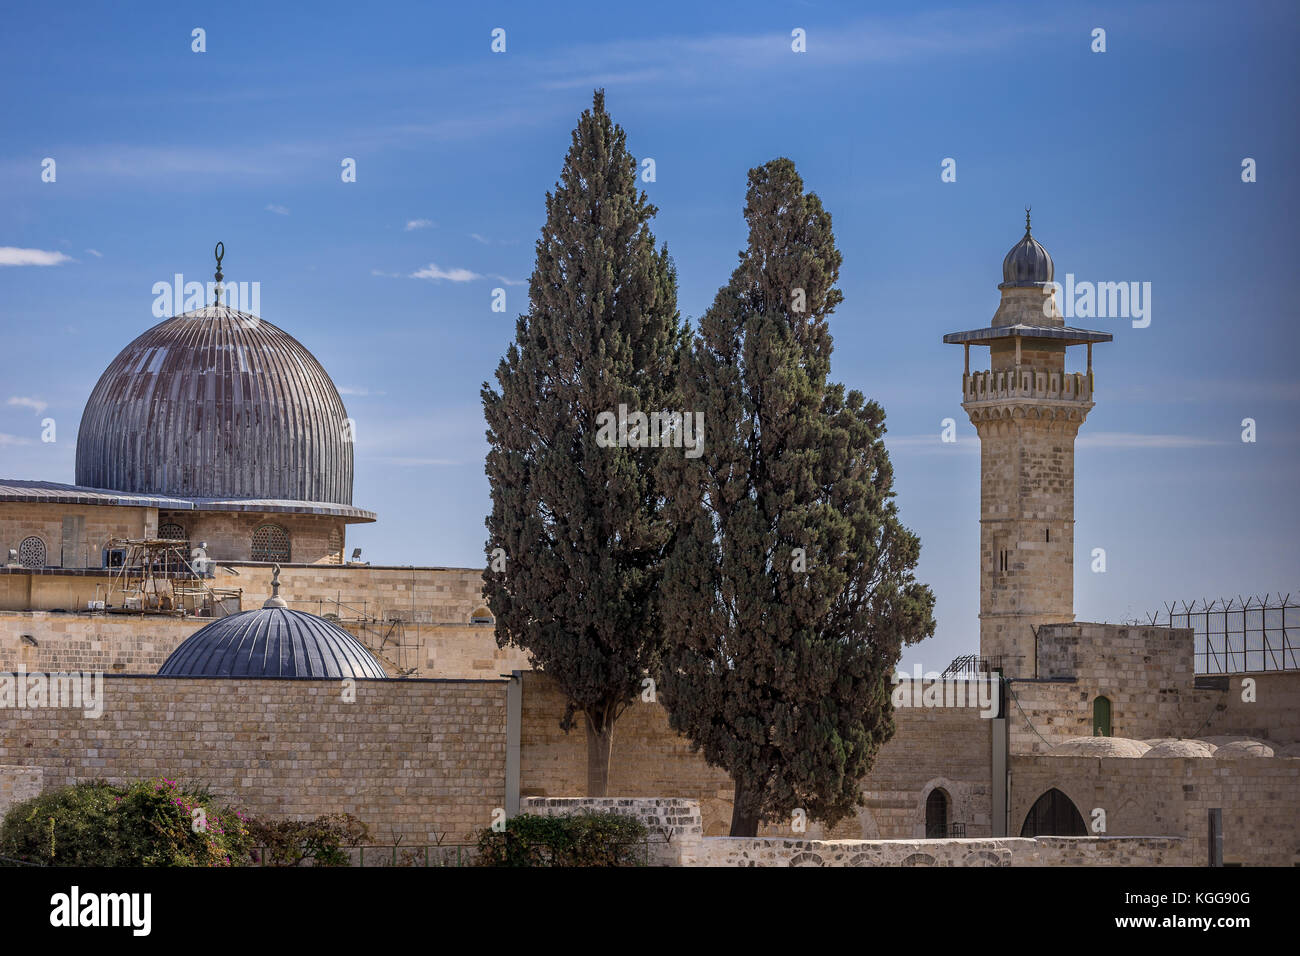 Moschea al aqsa in Gerusalemme, il terzo sito più sacro dell'islam. Foto Stock